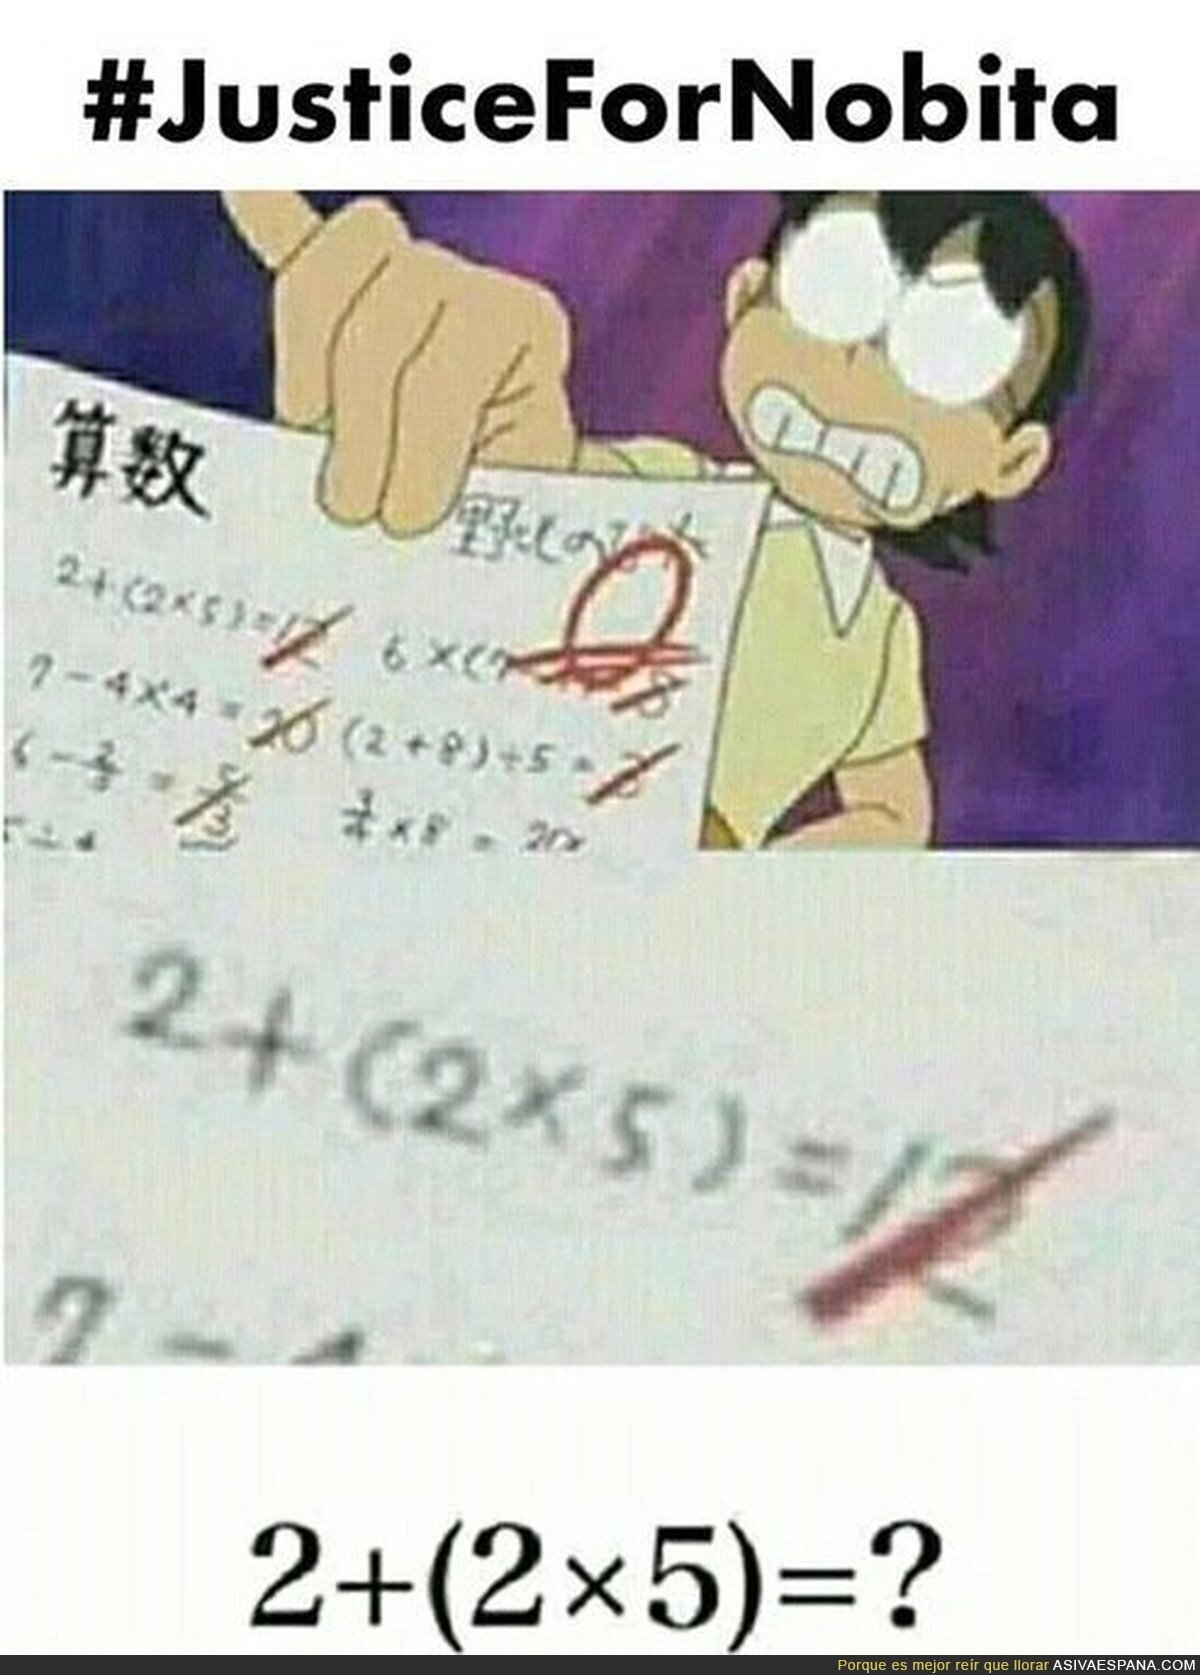 Nobita no merecía esas notas